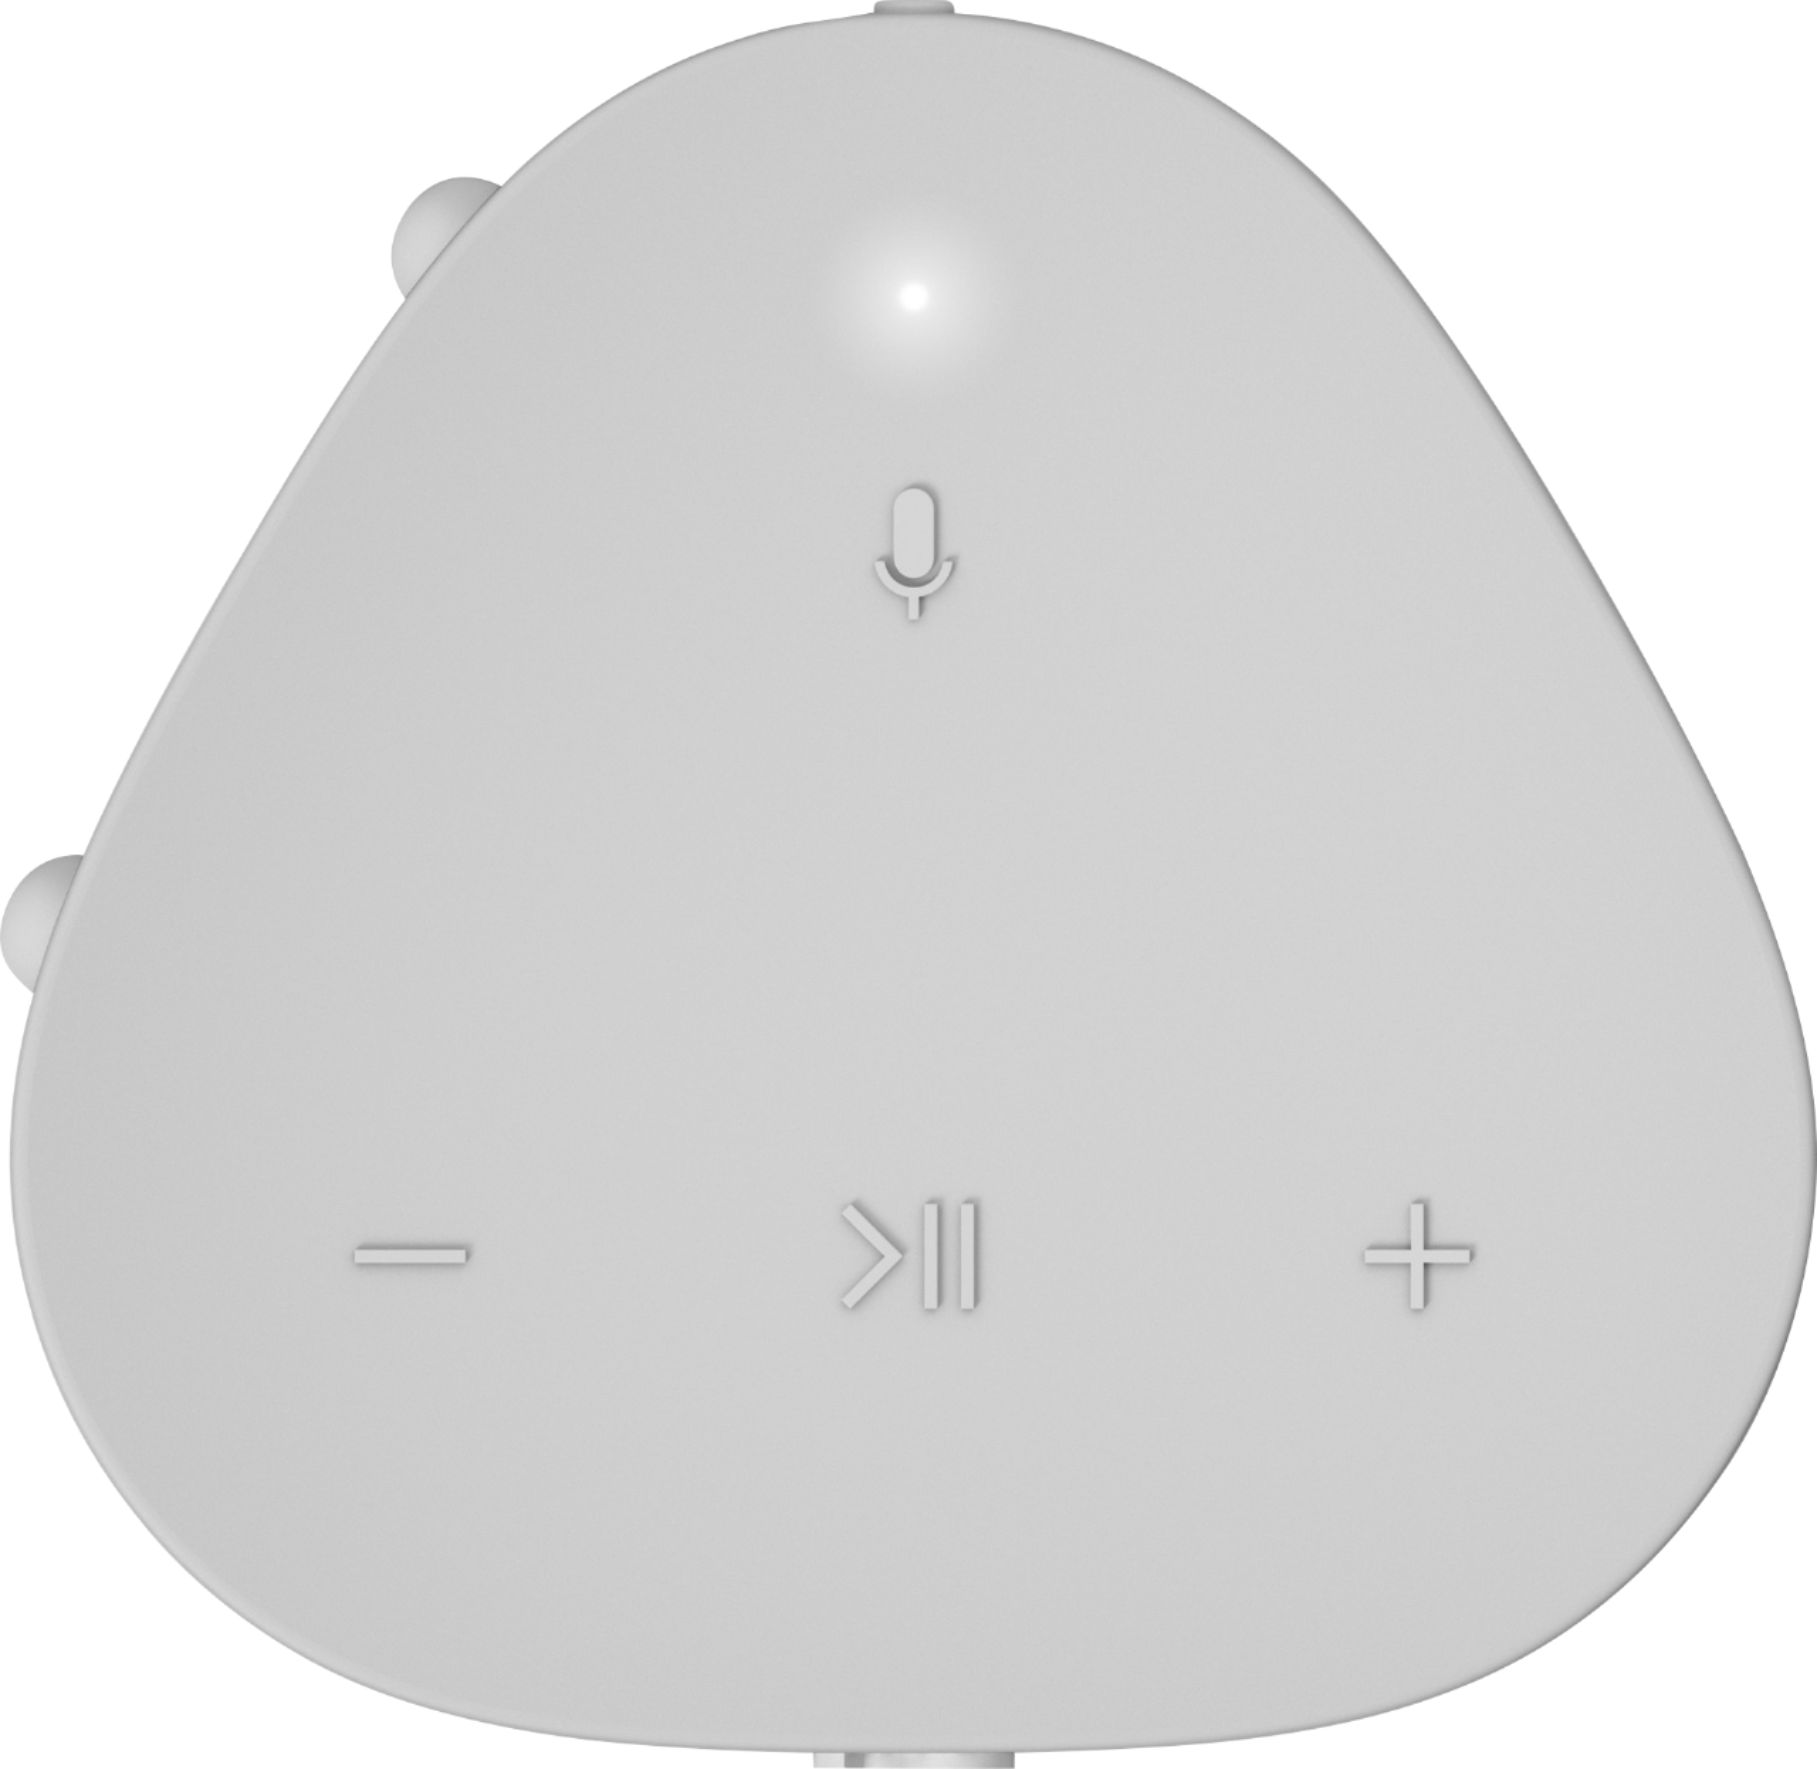 Sonos One SL Wireless Smart Speaker White ONESLUS1 - Best Buy